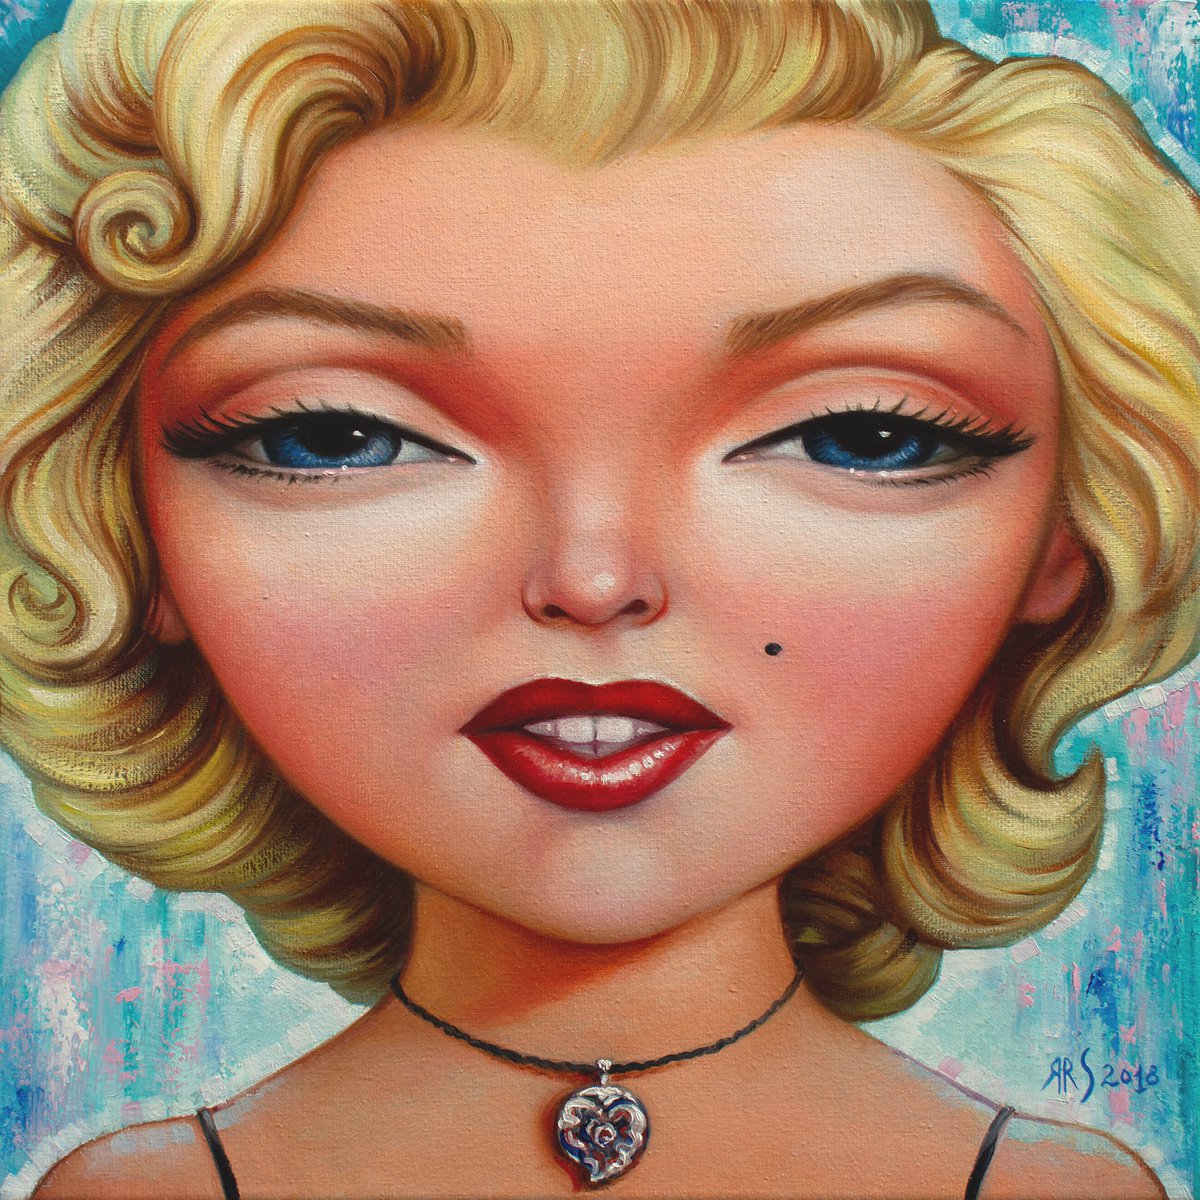 SWEET MARILYN by Yaroslav Sobol (Glamorous Marilyn Monroe Pop Art Painting - Famous Actres... by Yaroslav Sobol